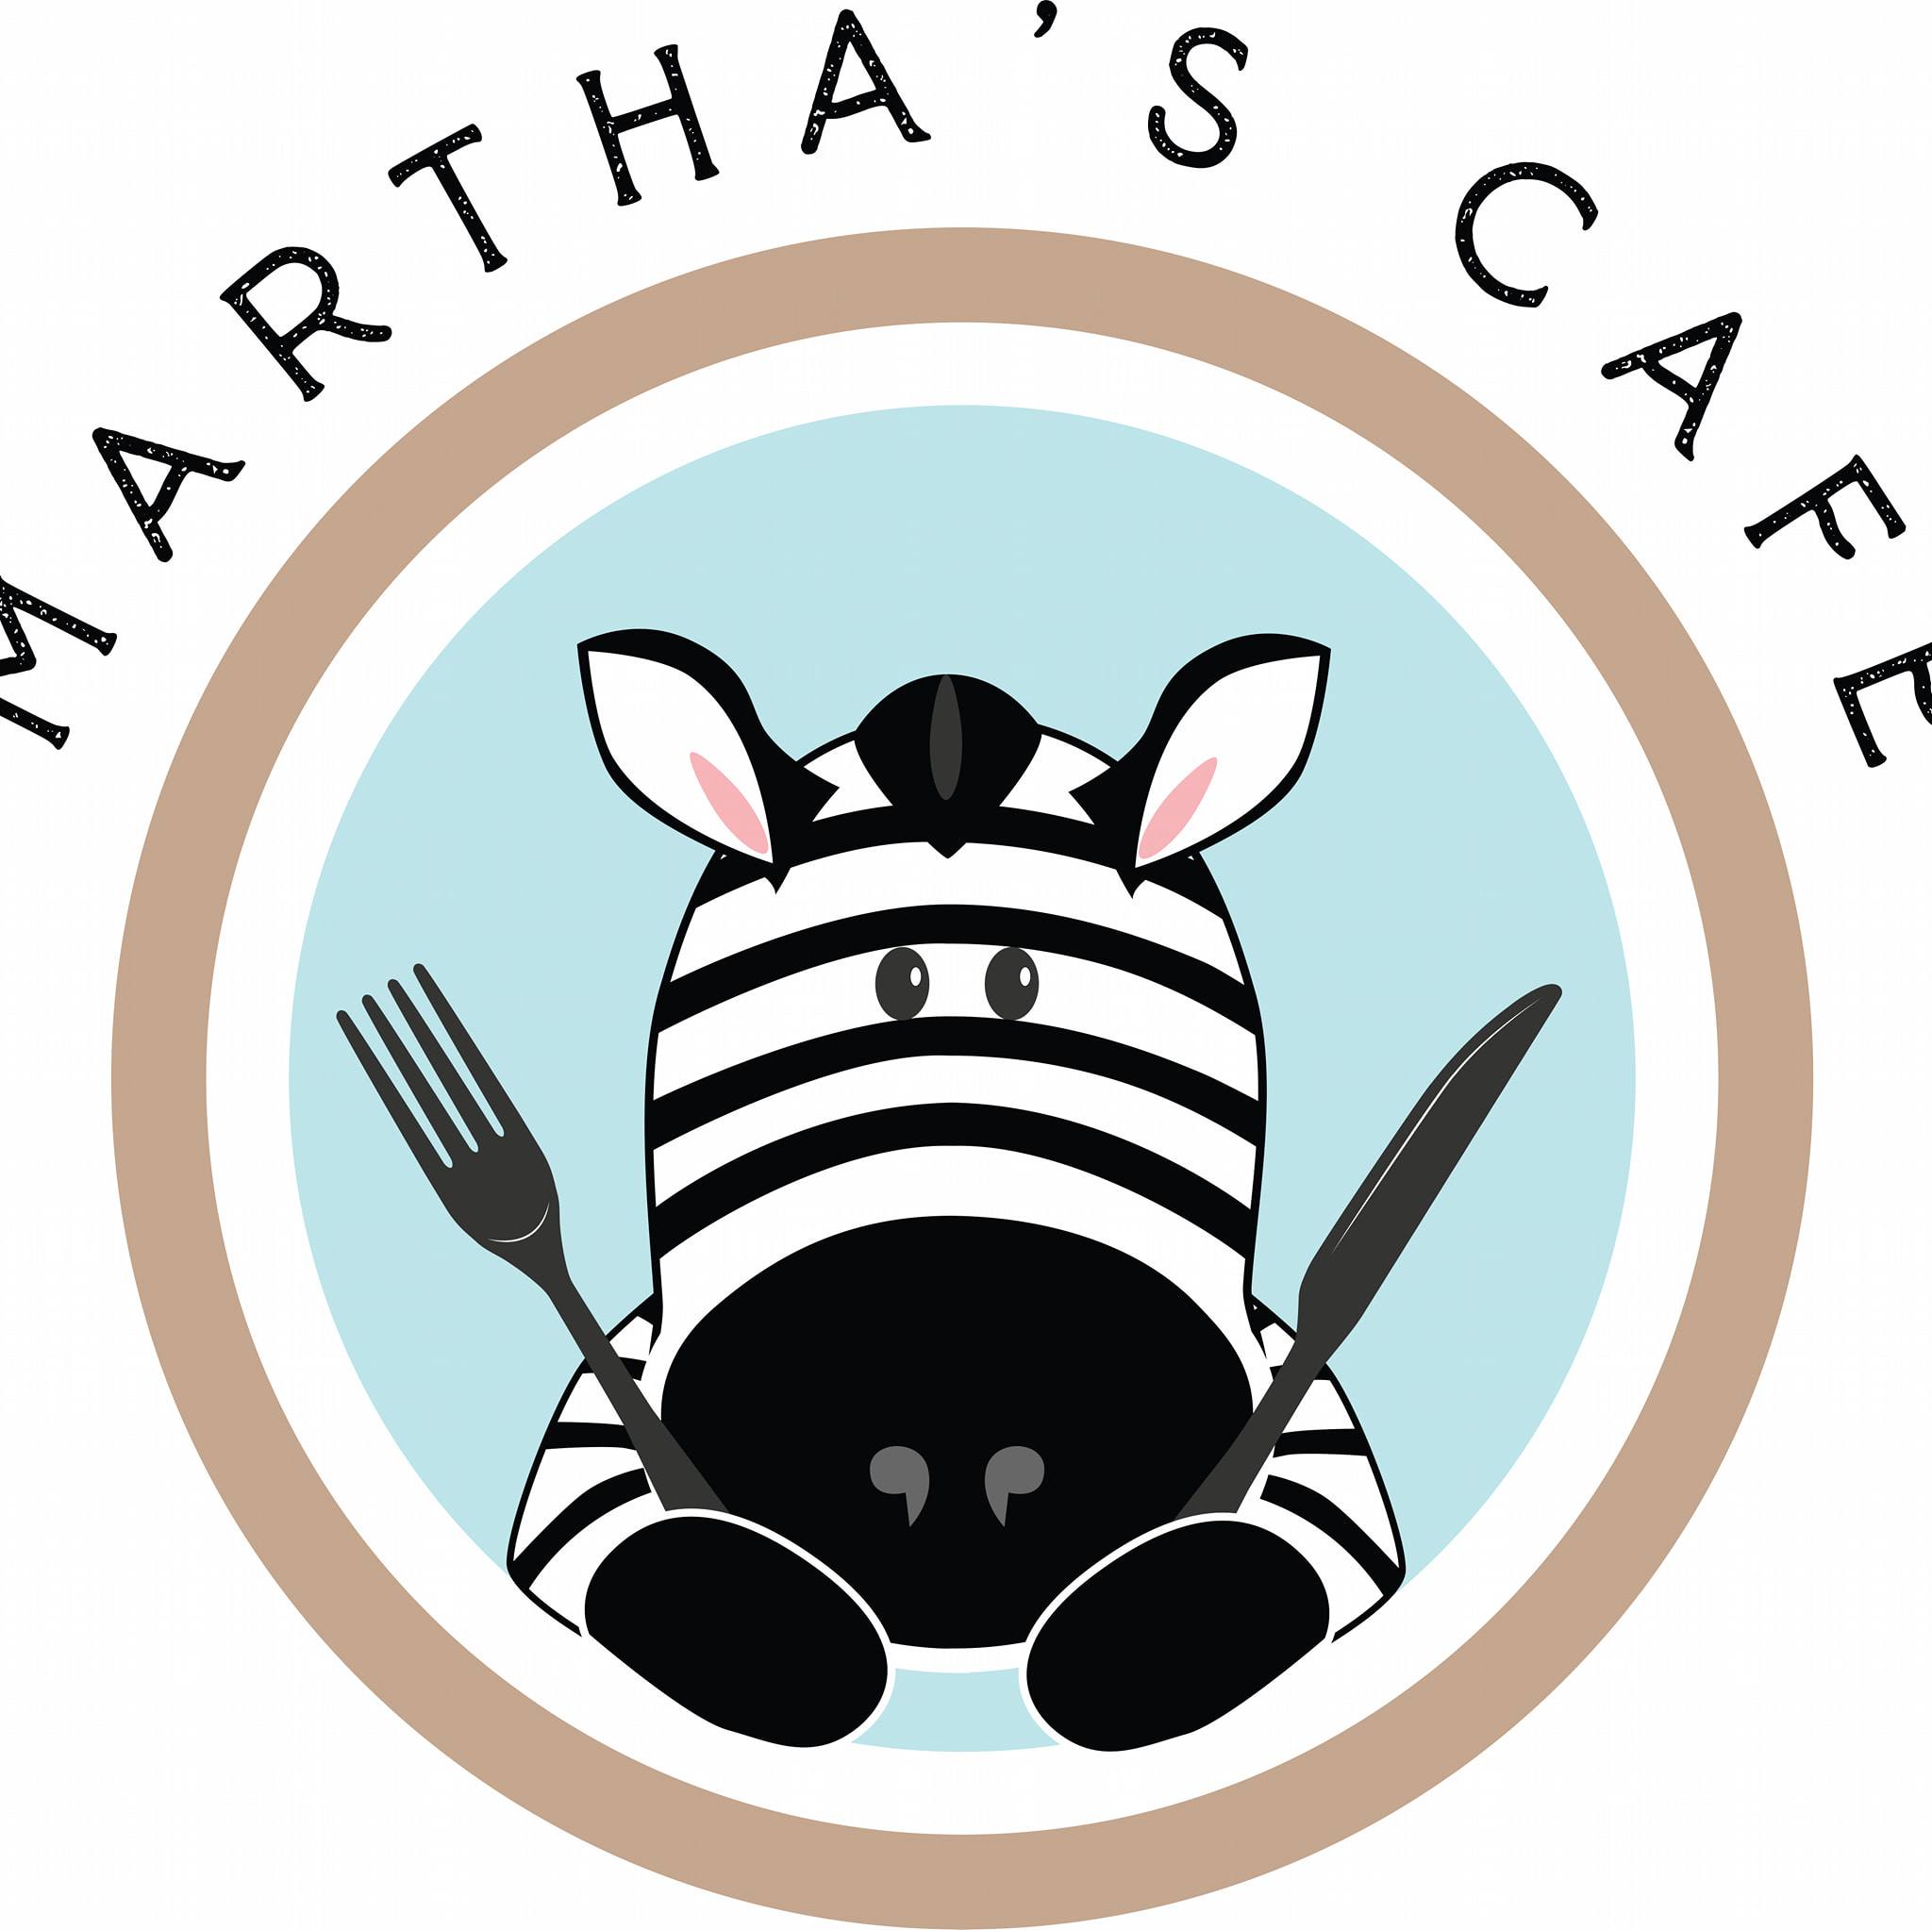 Martha’s Café